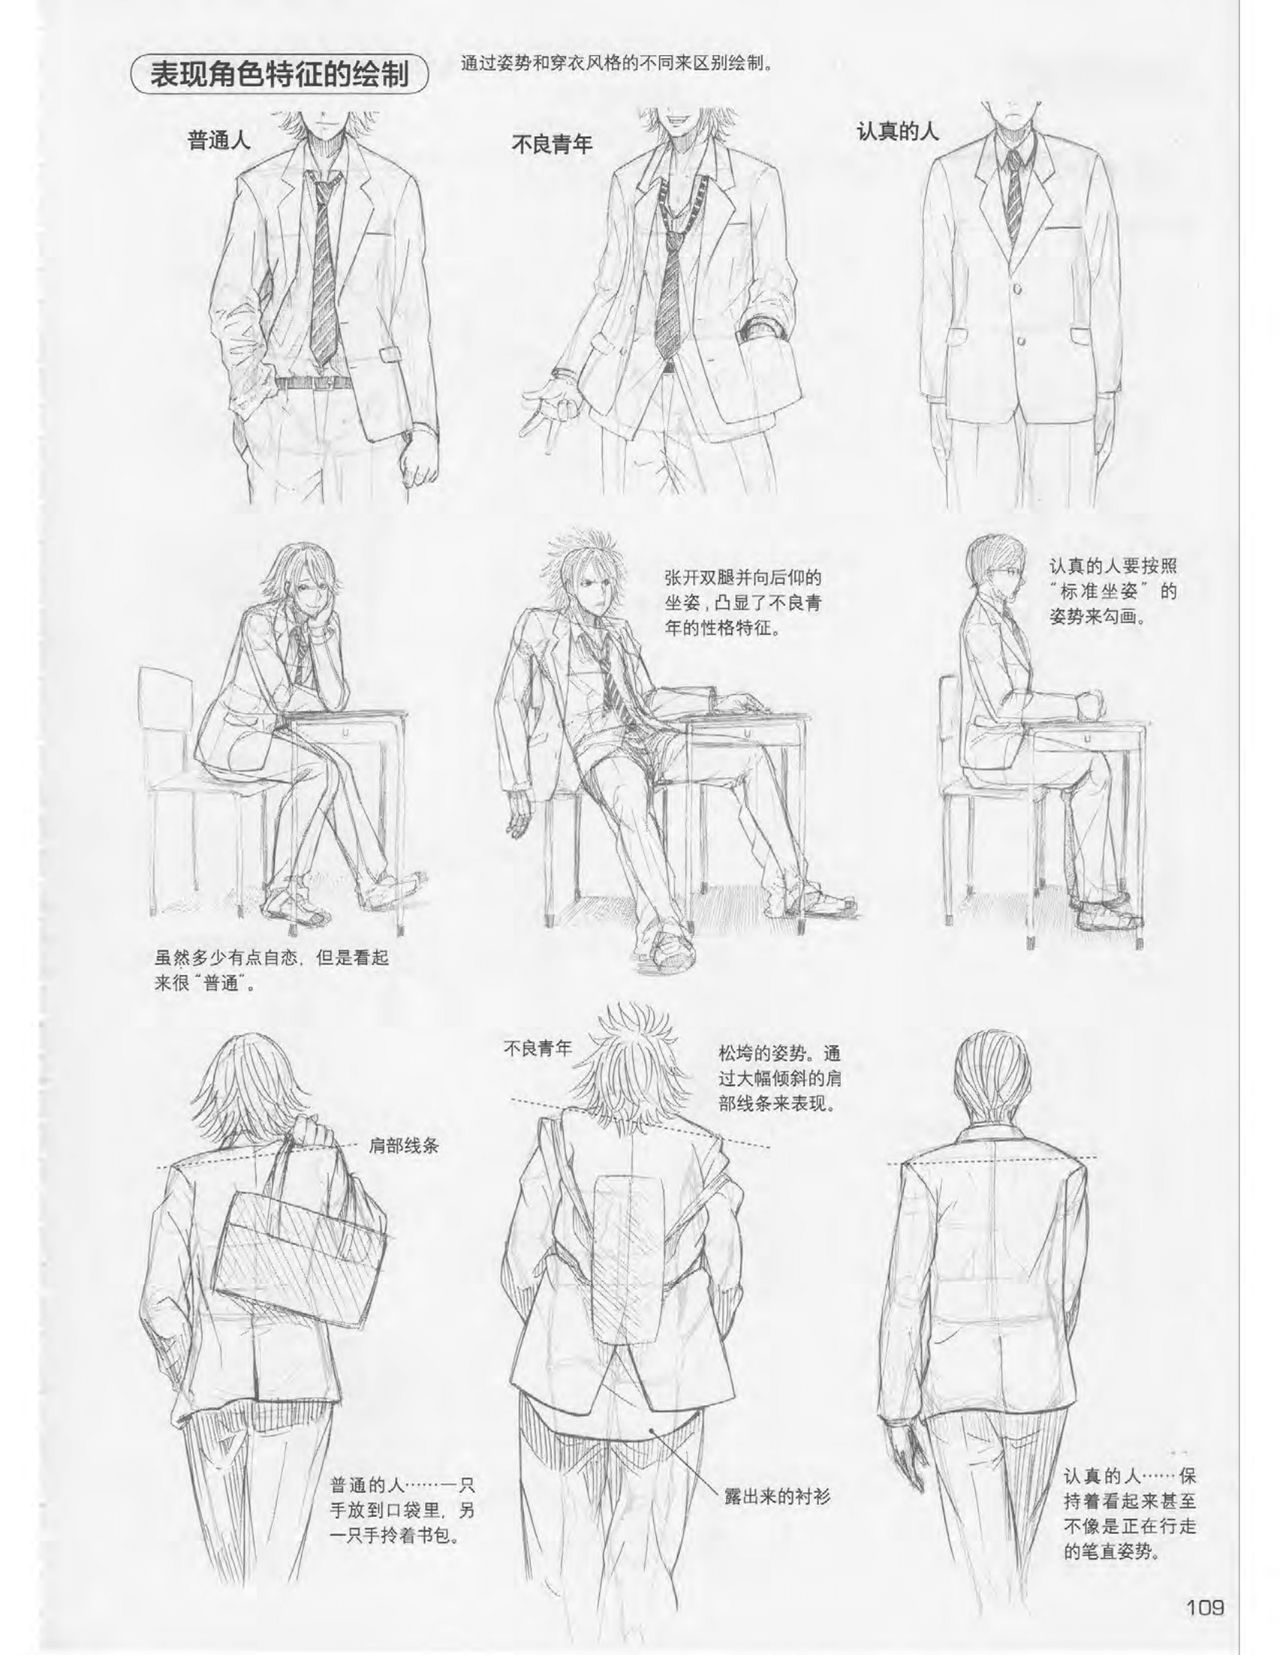 Japanese Manga Master Lecture 3: Lin Akira and Kakumaru Maru Talk About Glamorous Character Modeling 109